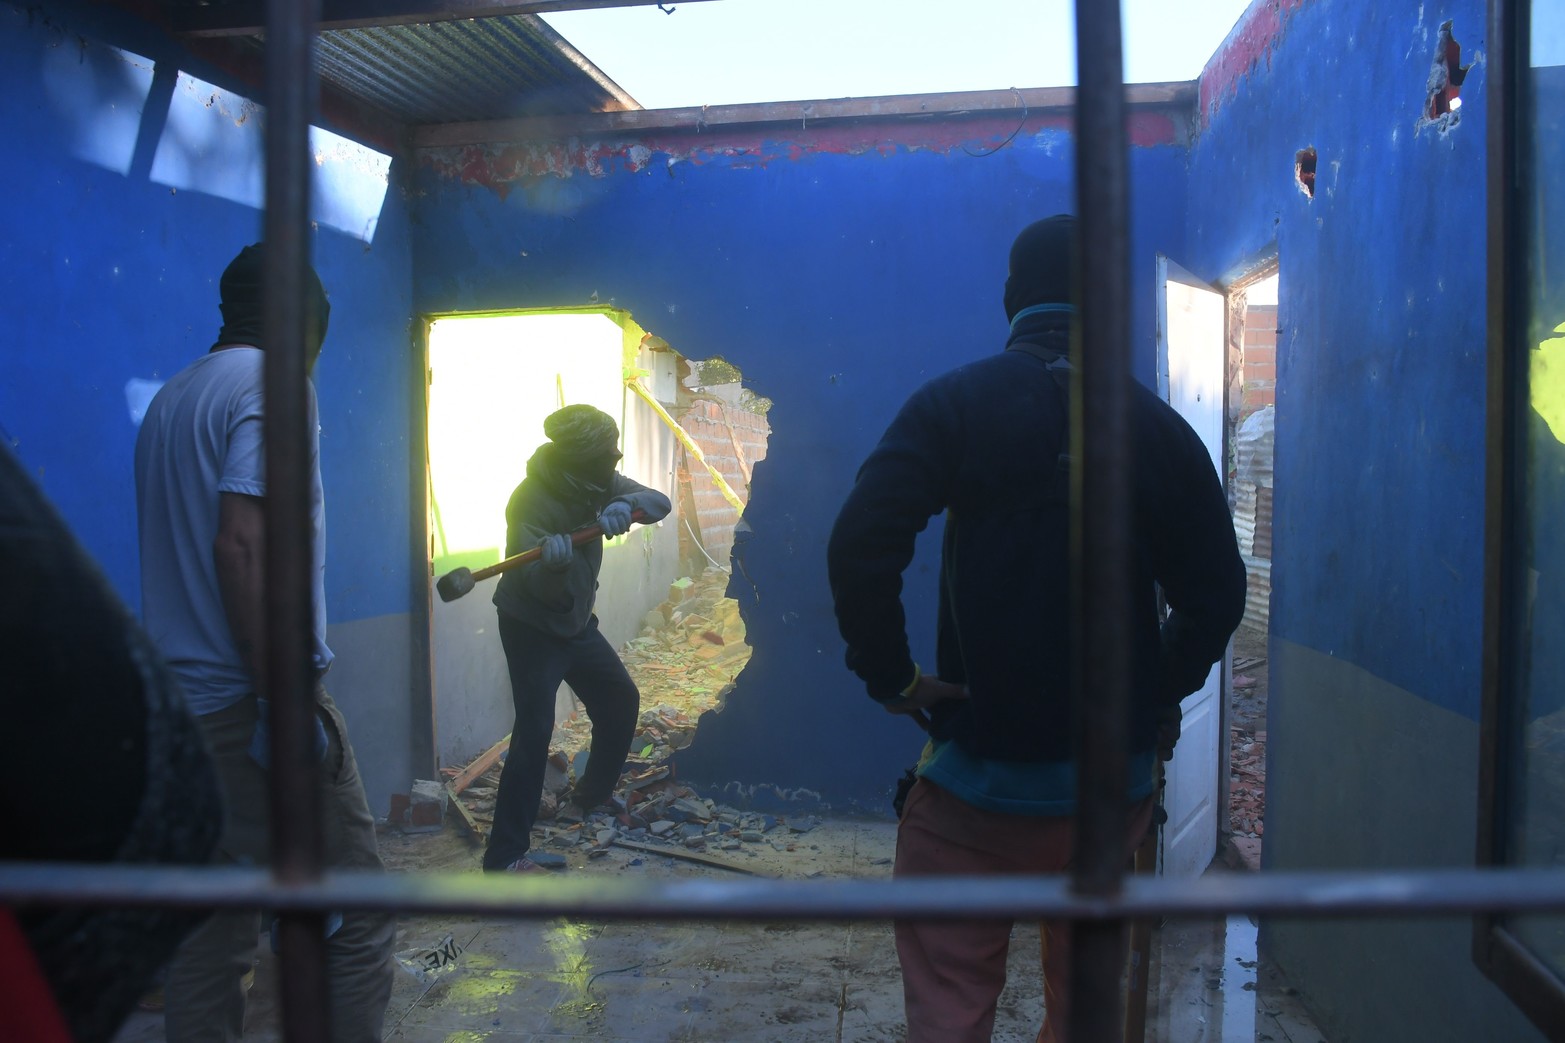 Destruyen casas que funcionaron como búnkeres. Esta semana tumbaron tres viviendas. El ministro de Seguridad Pablo Cococcioni explicó que “el derrumbe, desmantelamiento o clausura física de los edificios es preciso, ya que las personas detenidas luego son reemplazadas por otras”.